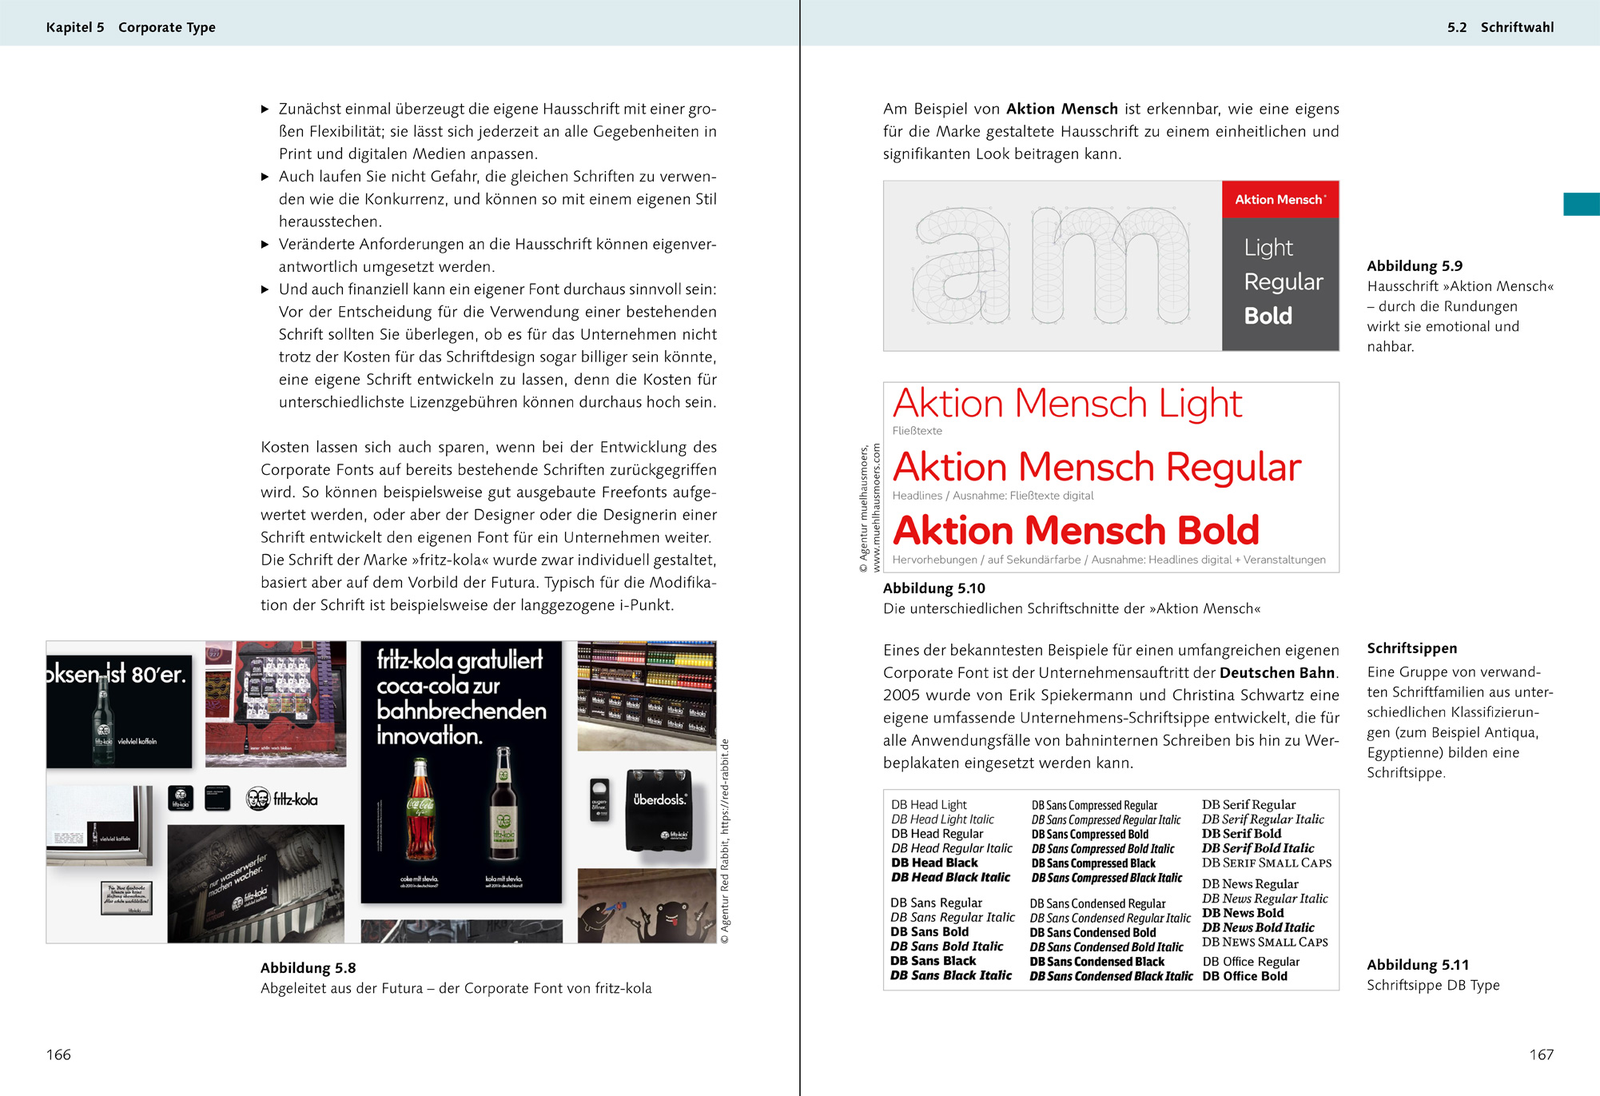 Corporate Design – Das umfassende Handbuch, Quelle: Rheinwerk Verlag